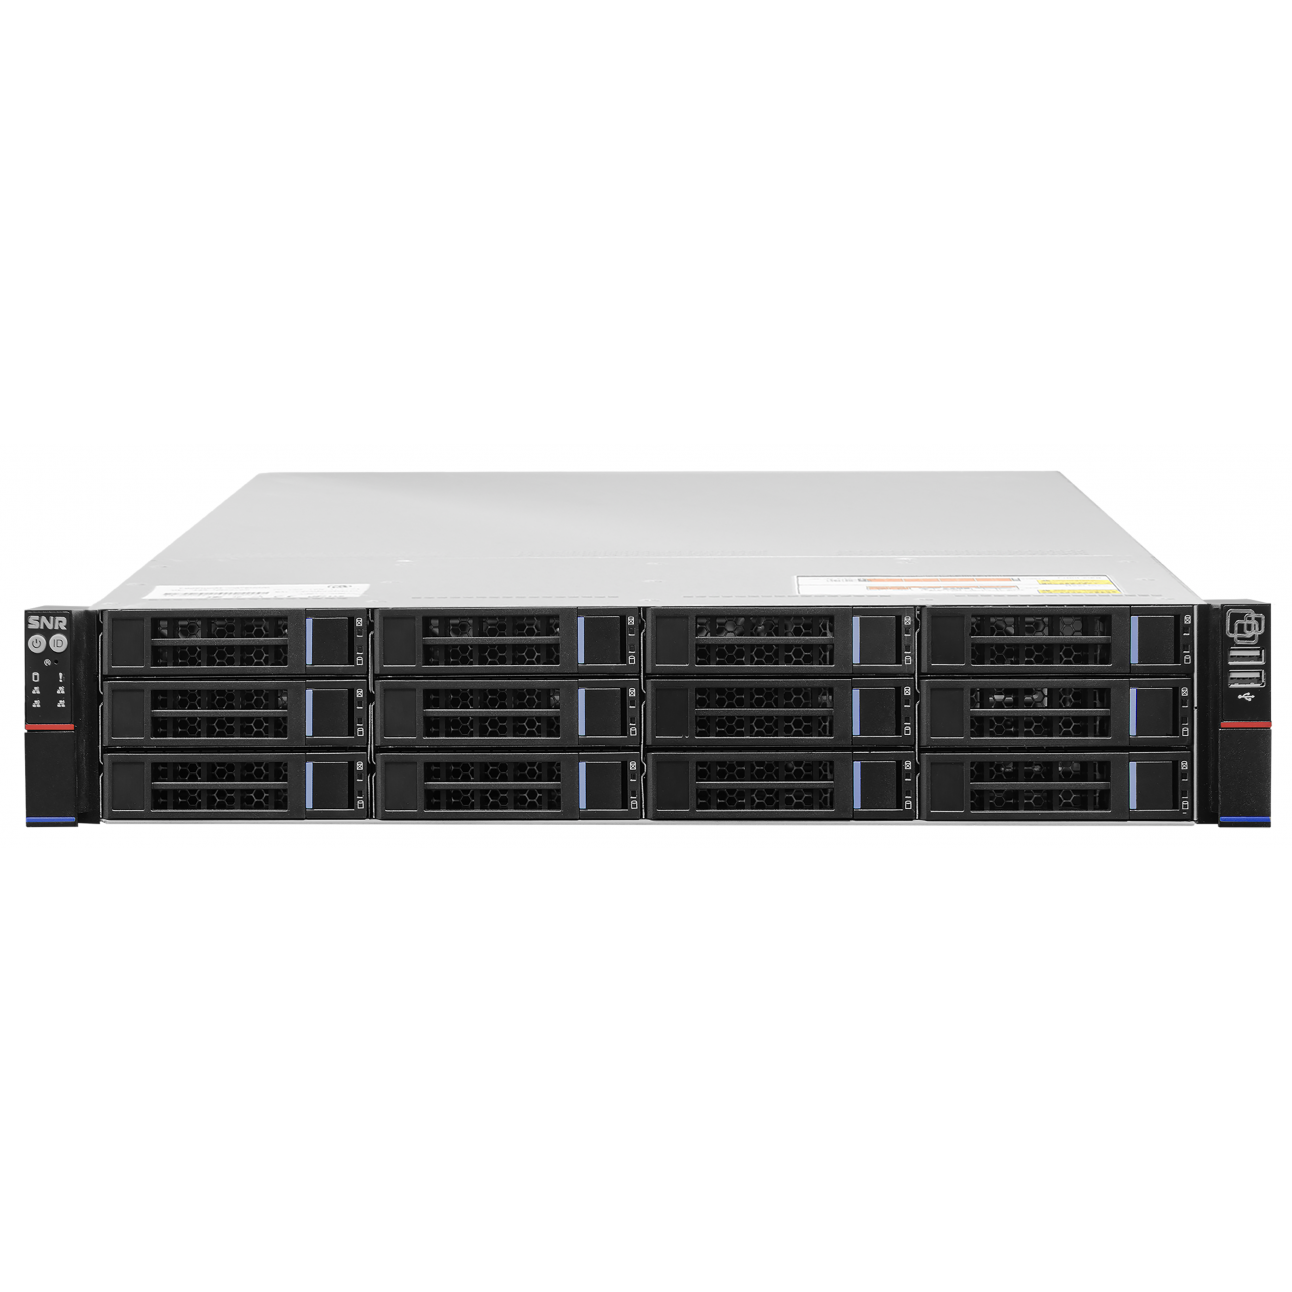 Сервер SNR-SR2216R DEMO, 2U, 2 процессора Intel 8C E5-2609v4, 8G DDR4, 5x1TB